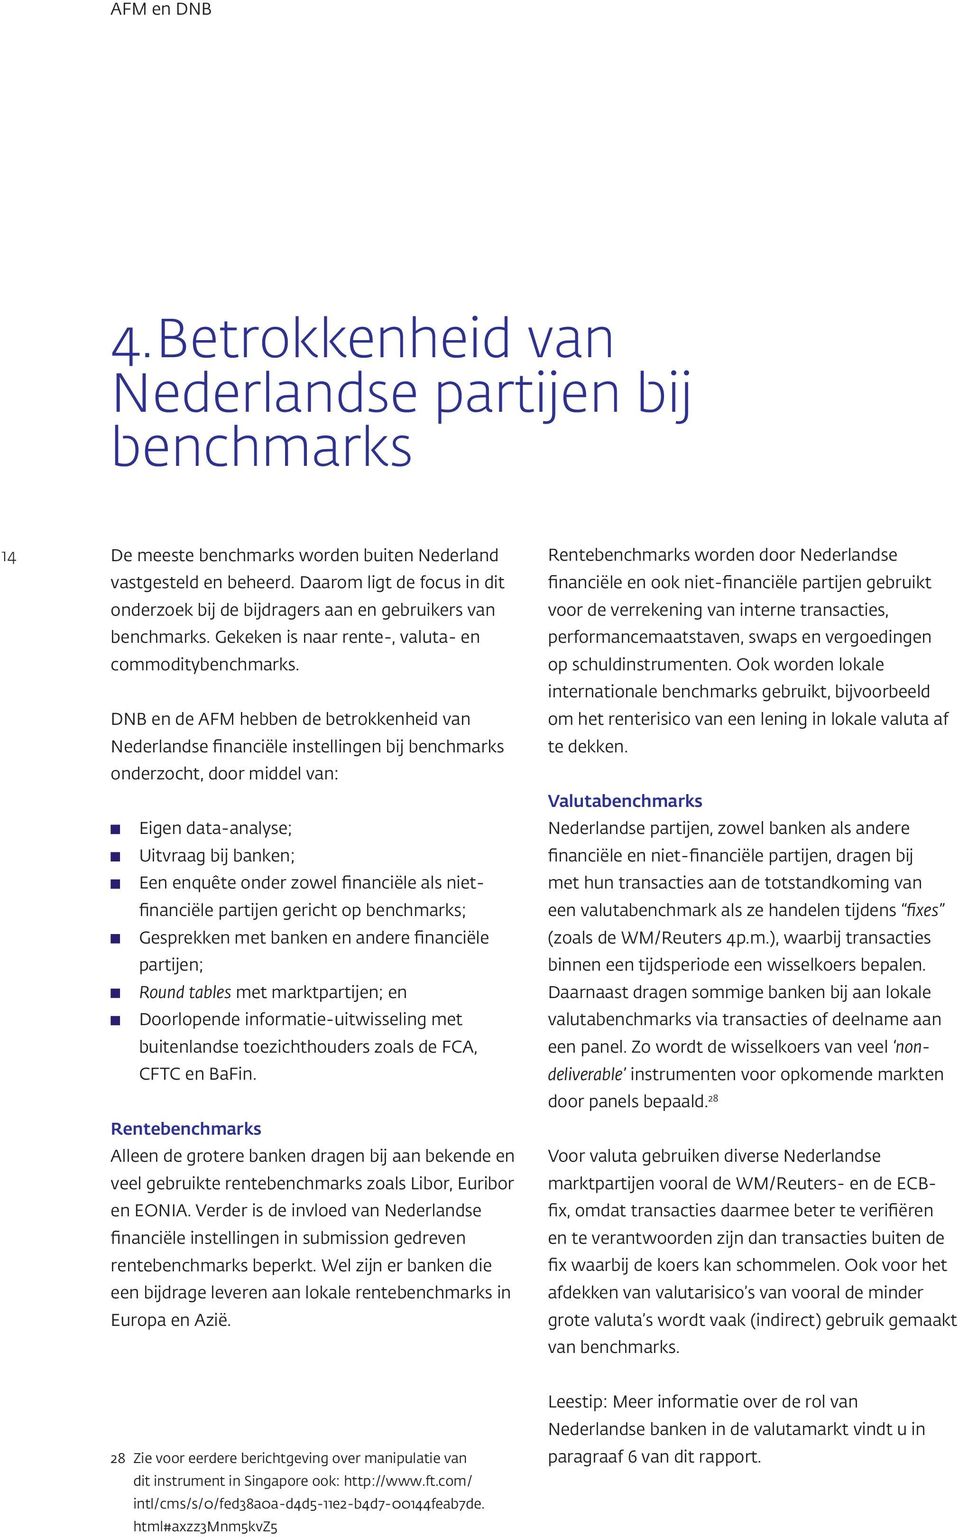 DNB en de AFM hebben de betrokkenheid van Nederlandse financiële instellingen bij benchmarks onderzocht, door middel van: Eigen data-analyse; Uitvraag bij banken; Een enquête onder zowel financiële